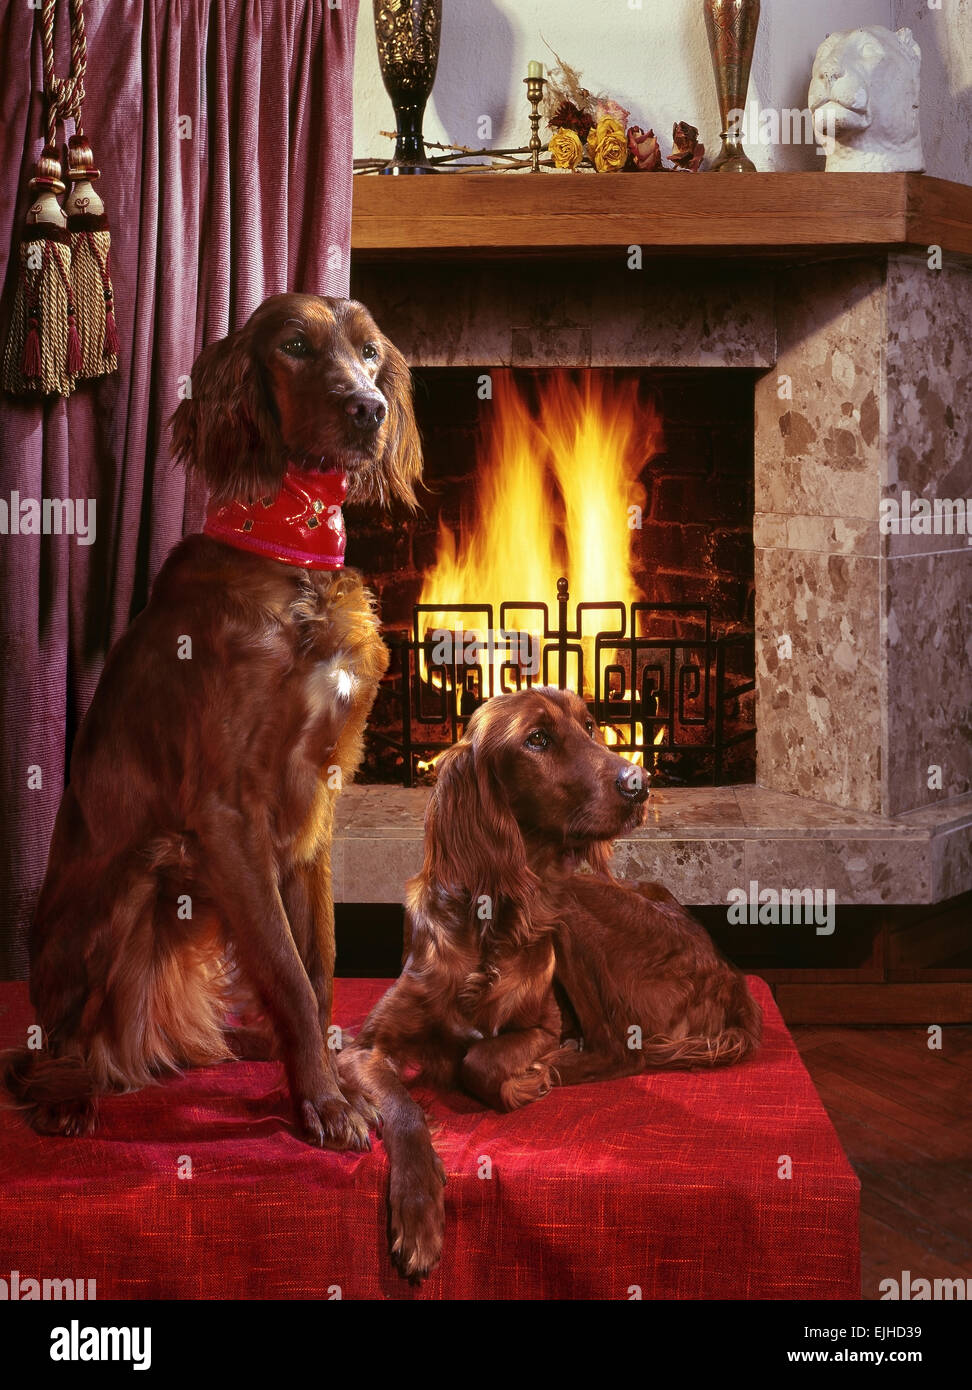 Two dogs (Irish Setter)near the fireplace. Stock Photo